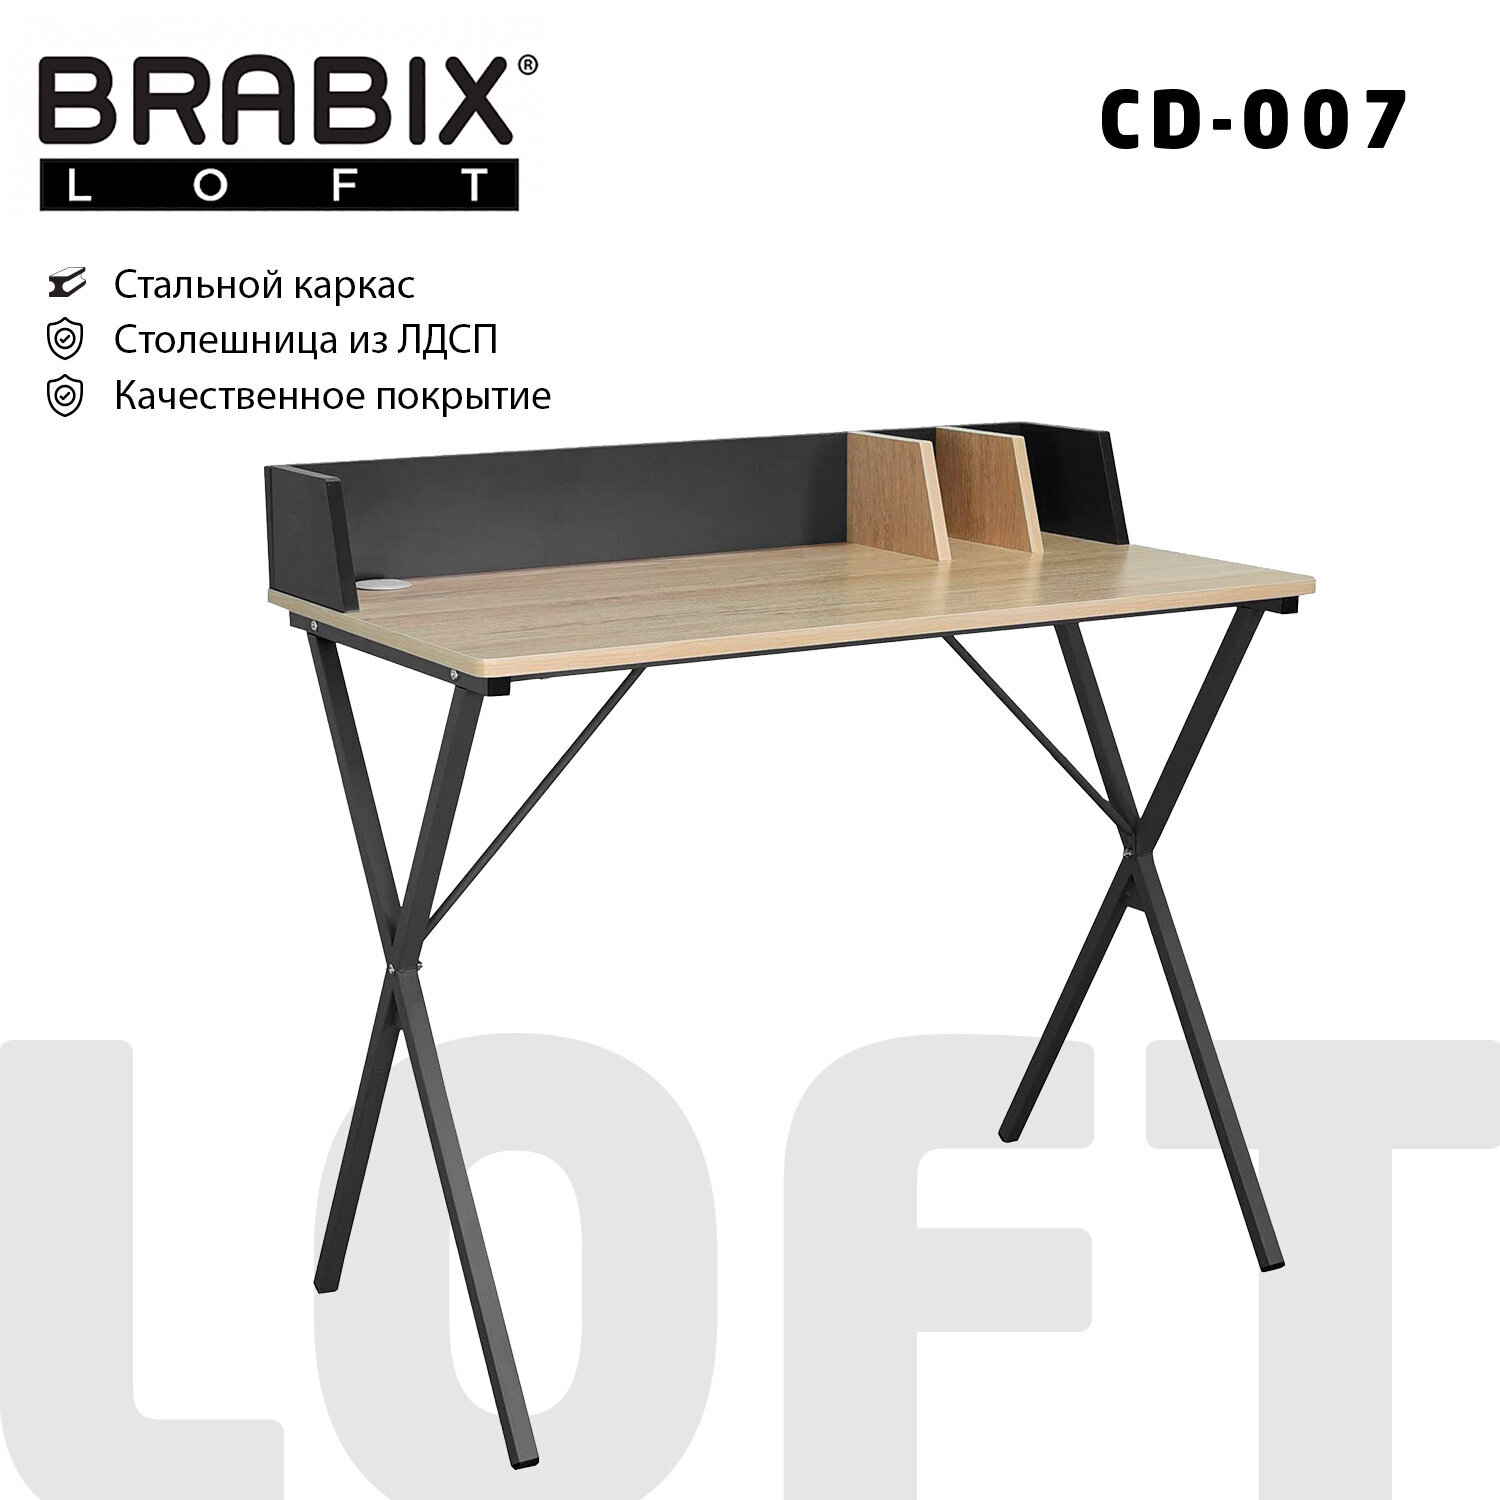 Brabix Стол на металлокаркасе BRABIX LOFT CD-007, 800х500х840 мм, органайзер, комбинированный, 641227